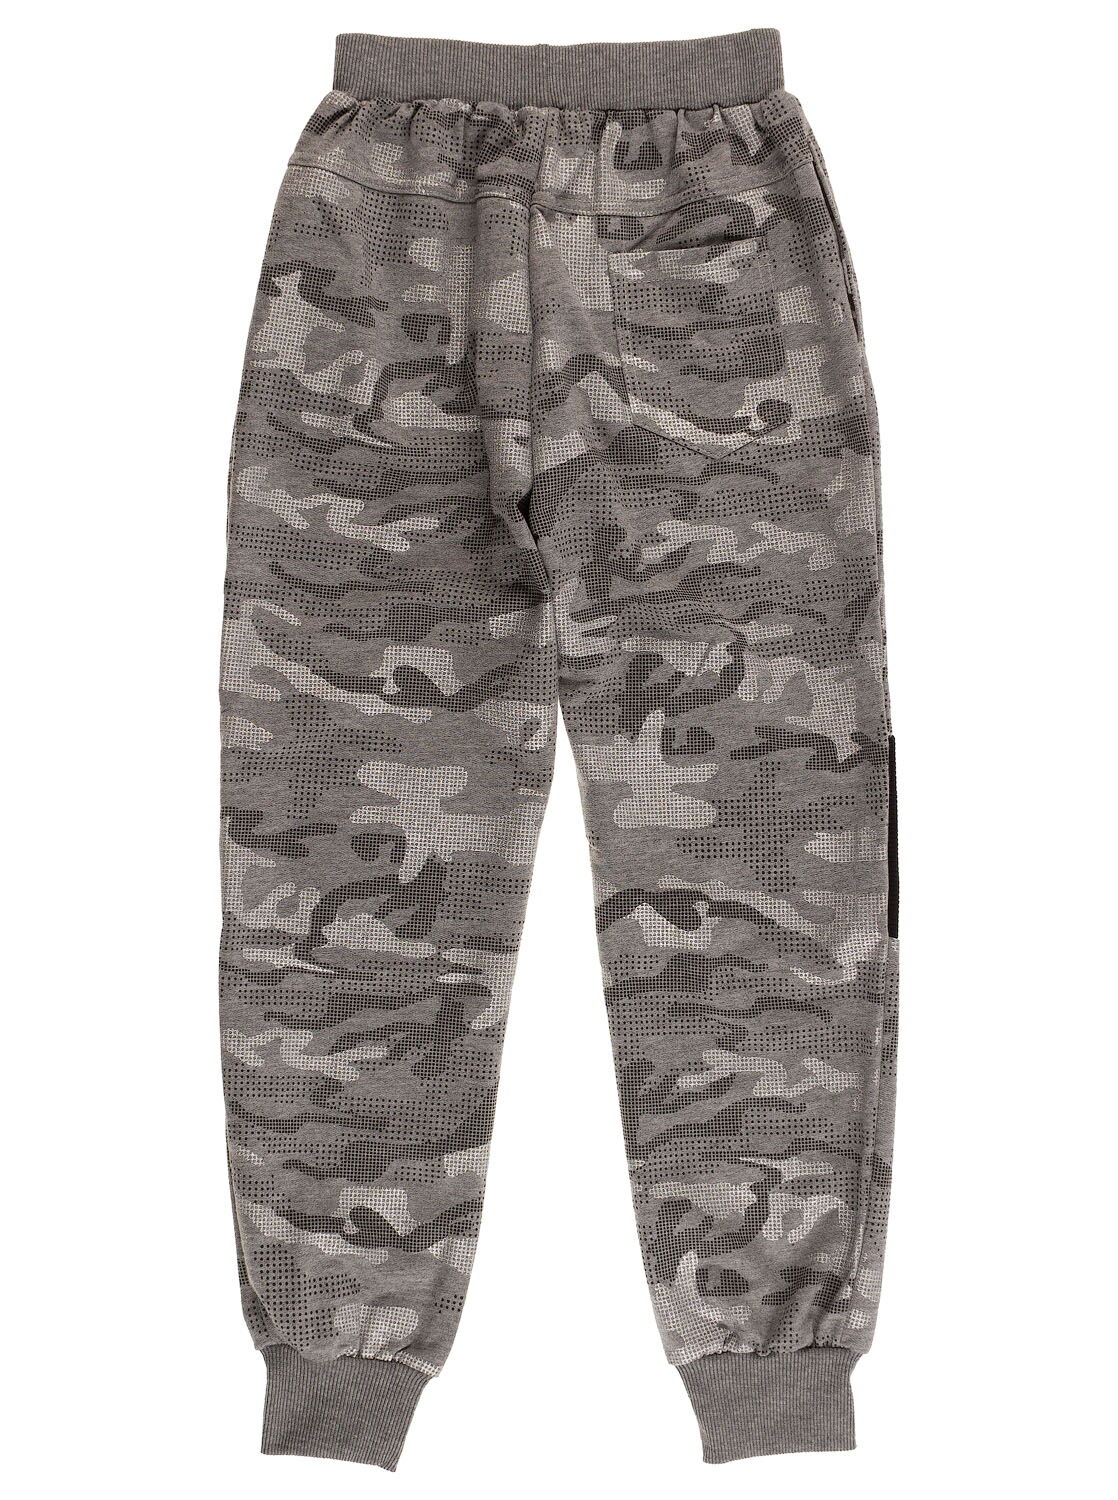 Спортивные штаны для мальчика Seagull серые 58280 - фото